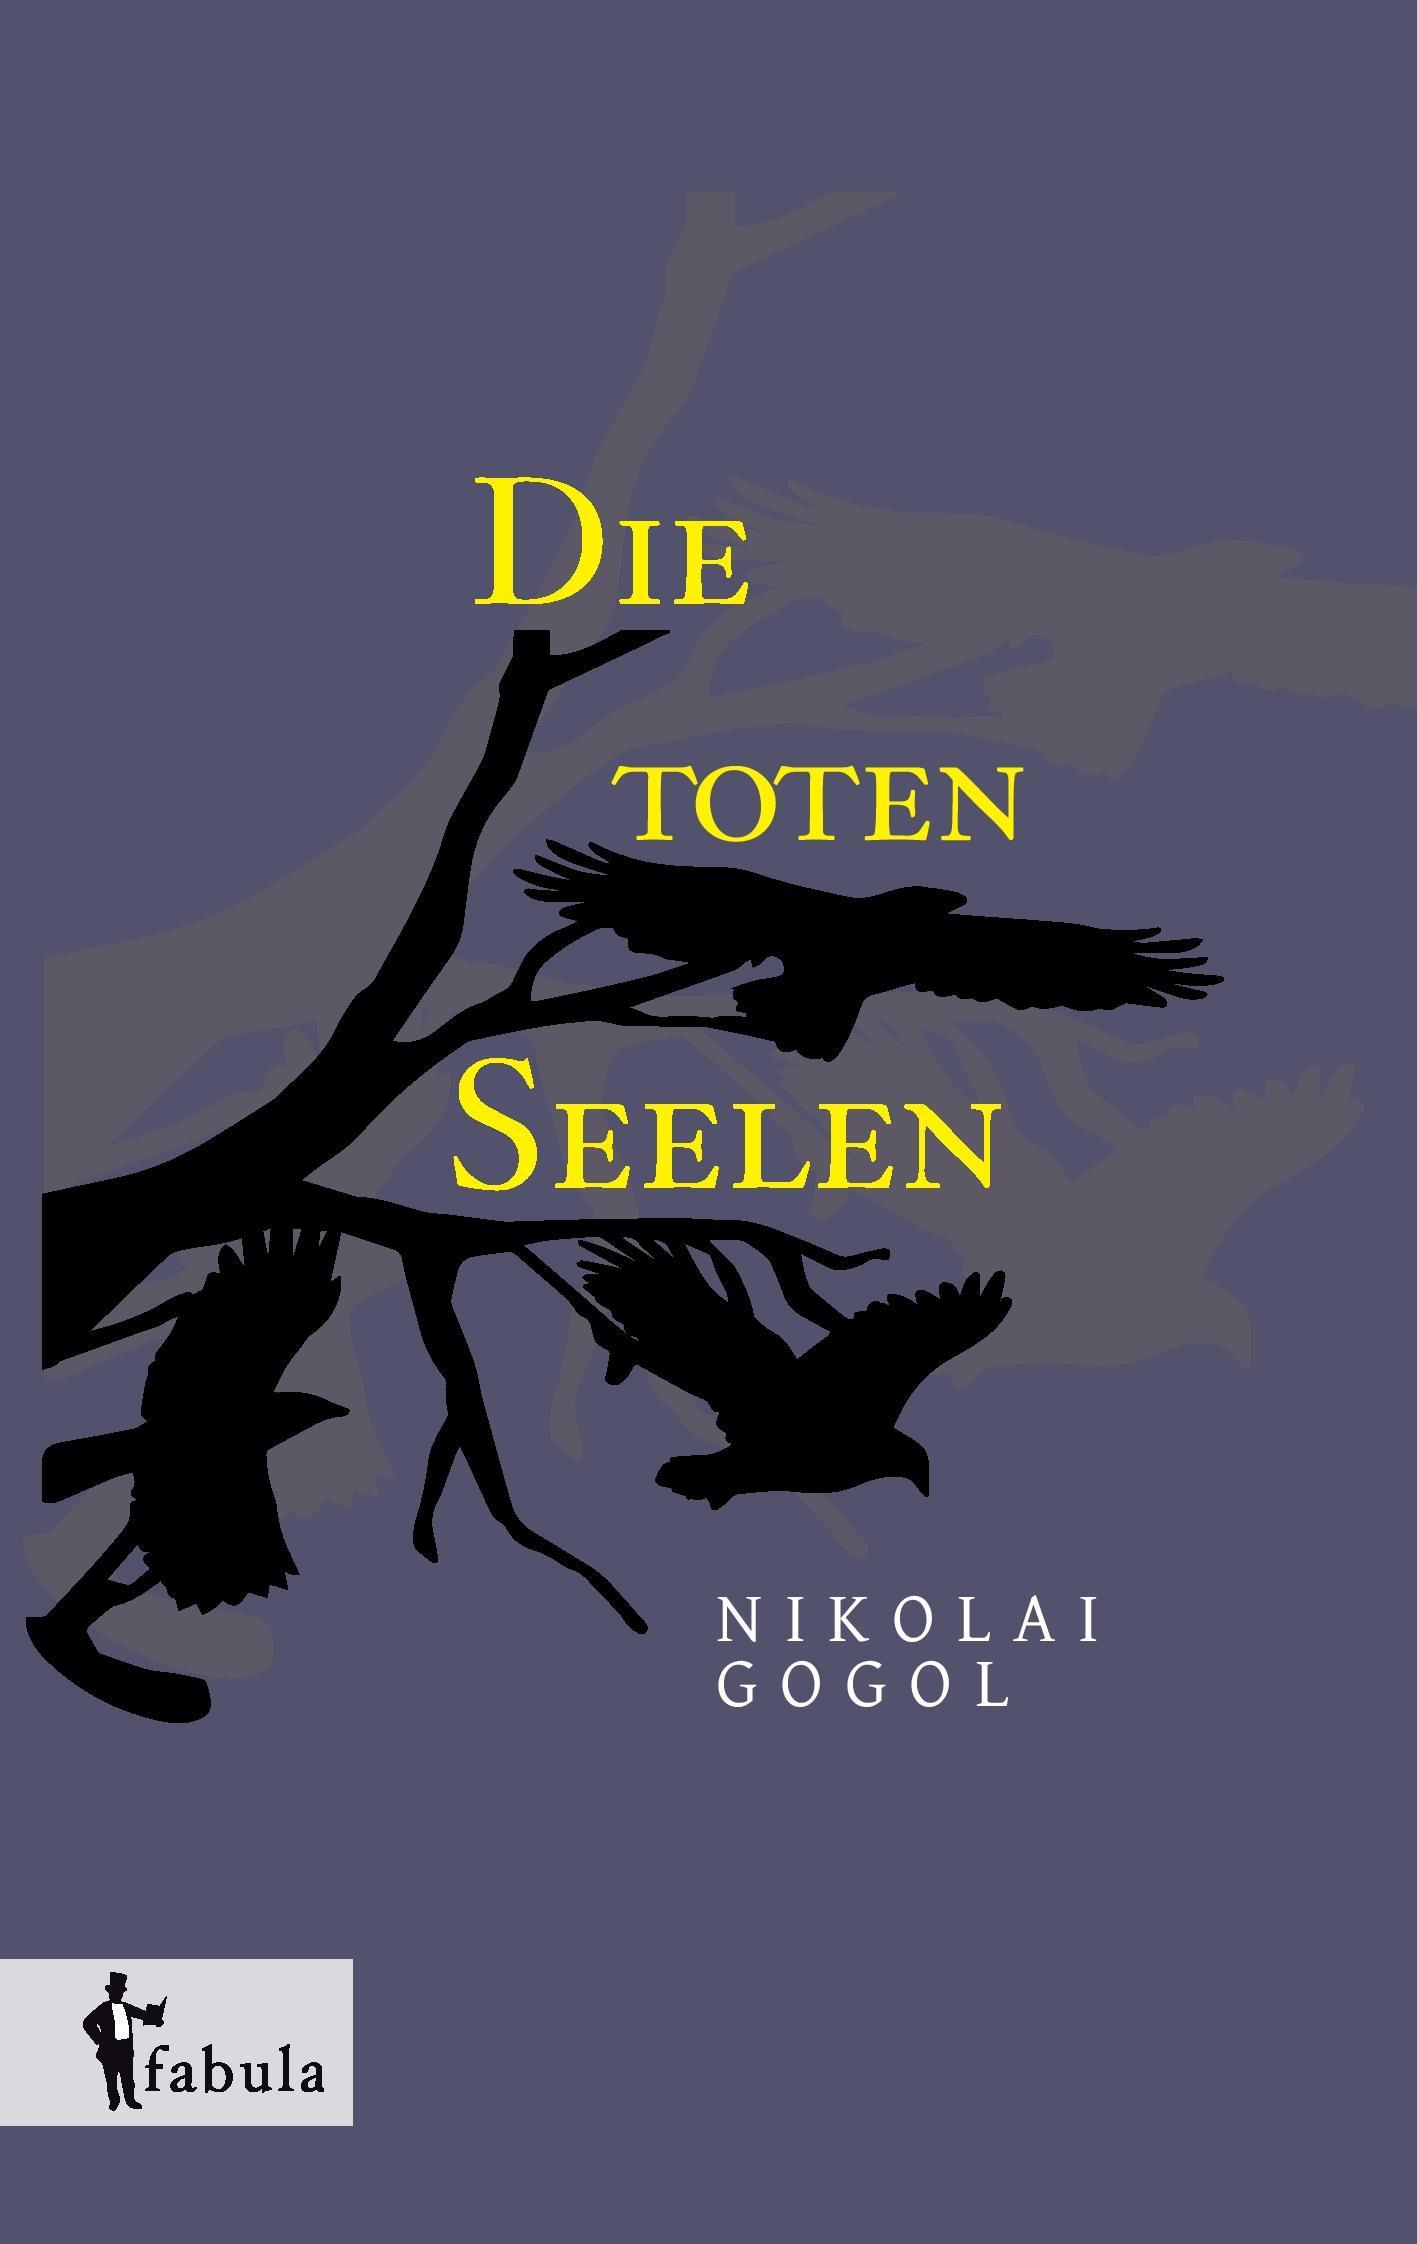 Die toten Seelen - Gogol, Nikolai Wassiljewitsch